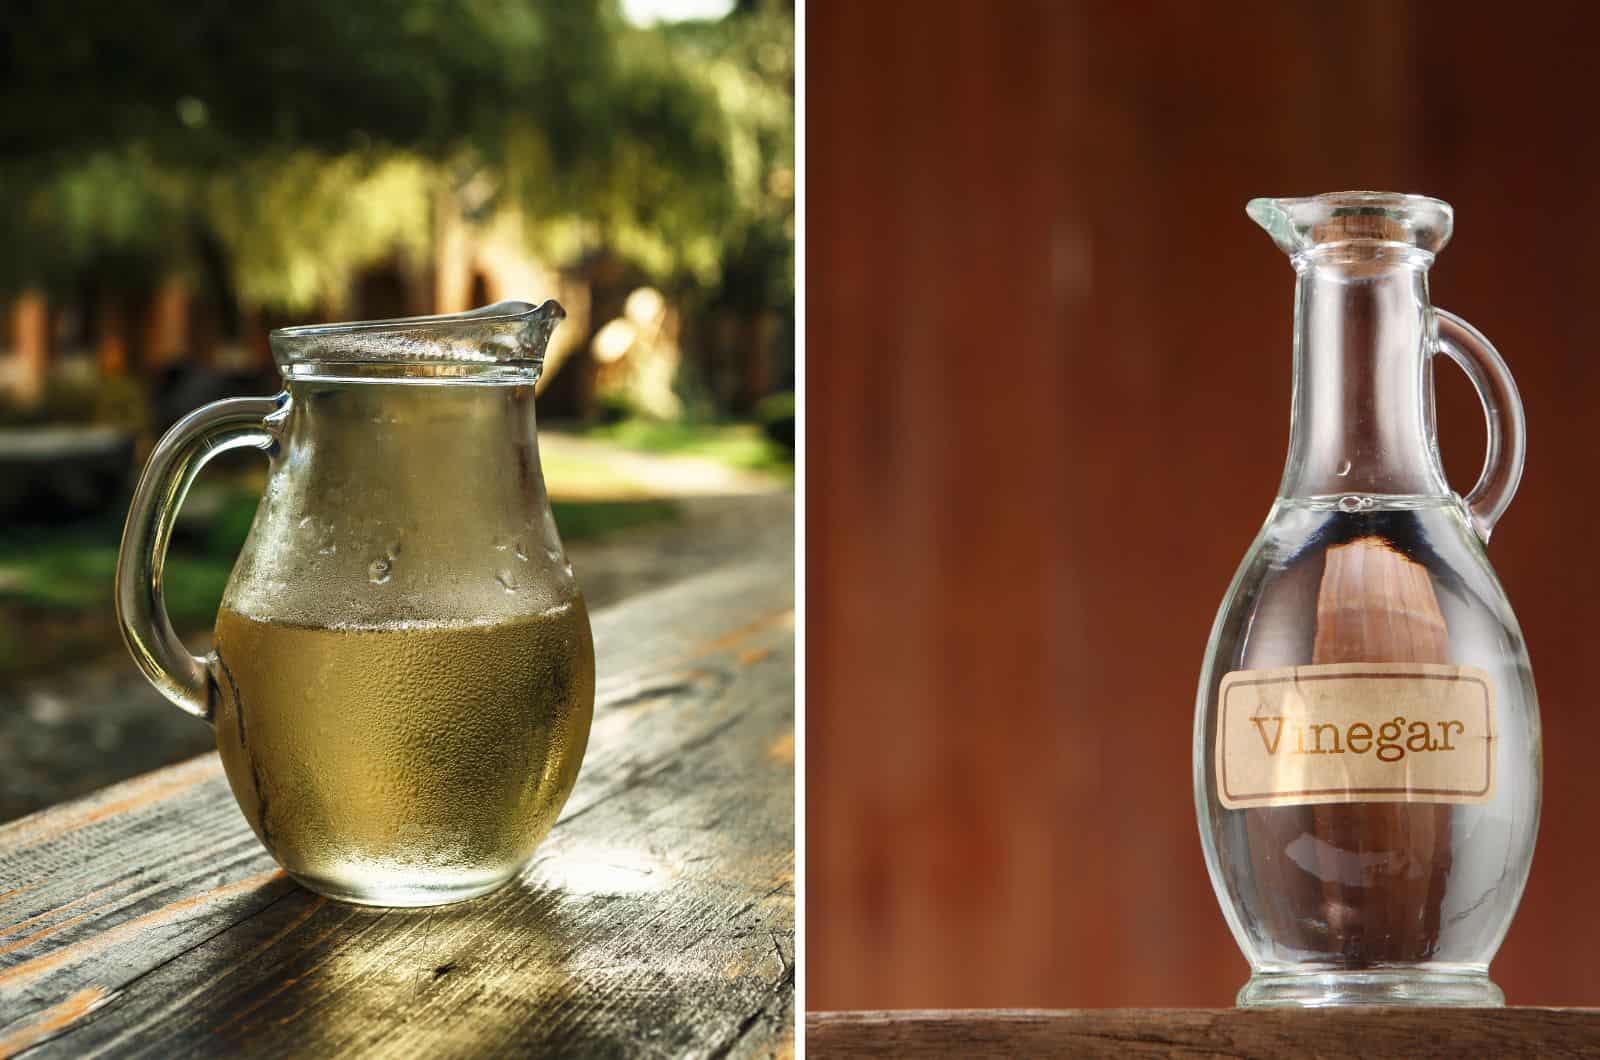 White Vinegar and White Wine Vinegar in bottle